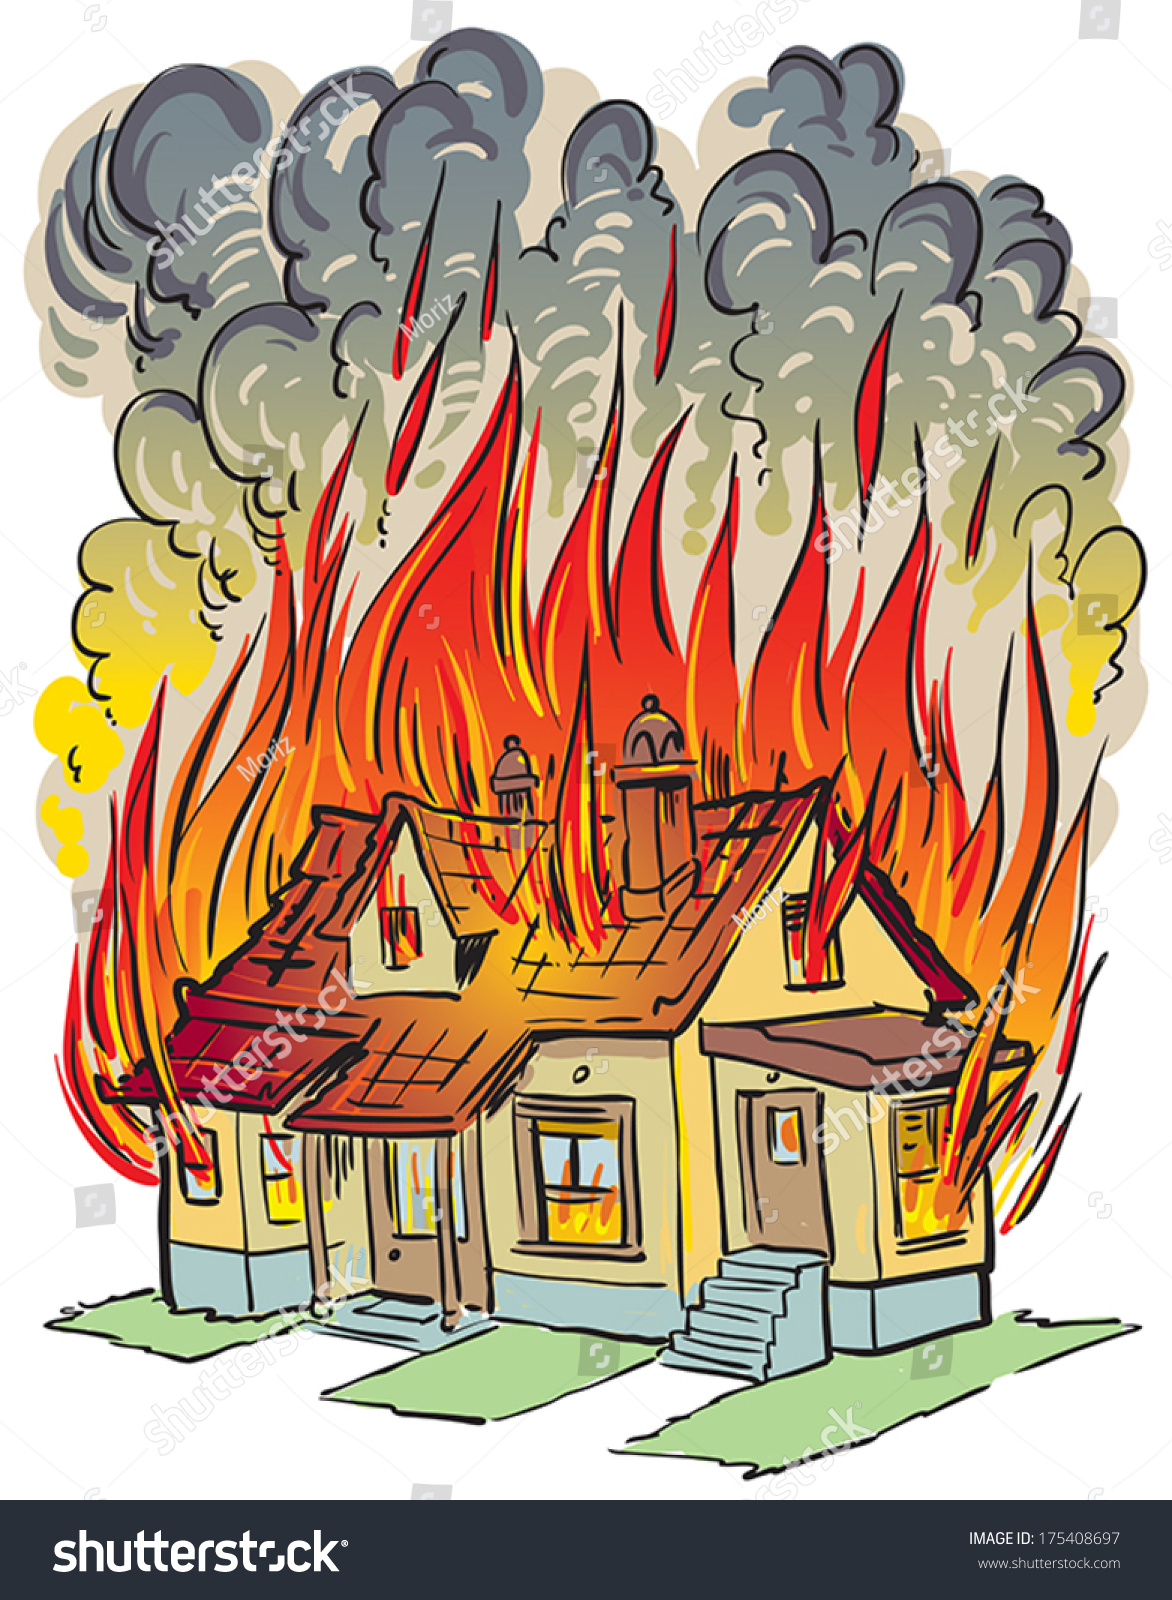 free clipart burning house - photo #14